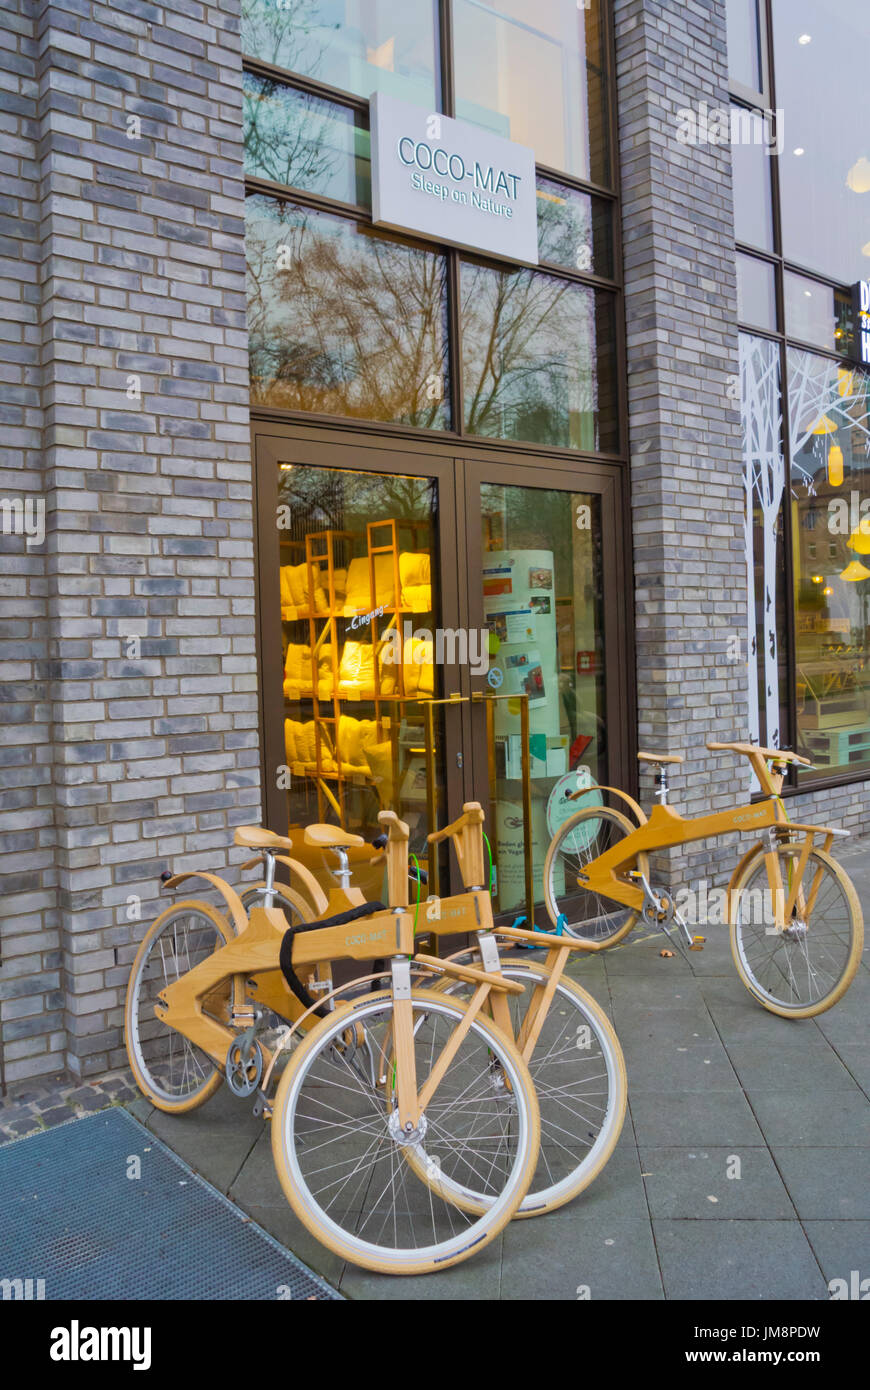 Hölzerne Fahrräder vor Coco mat Store, Frankfurt Am Main, Hessen,  Deutschland Stockfotografie - Alamy